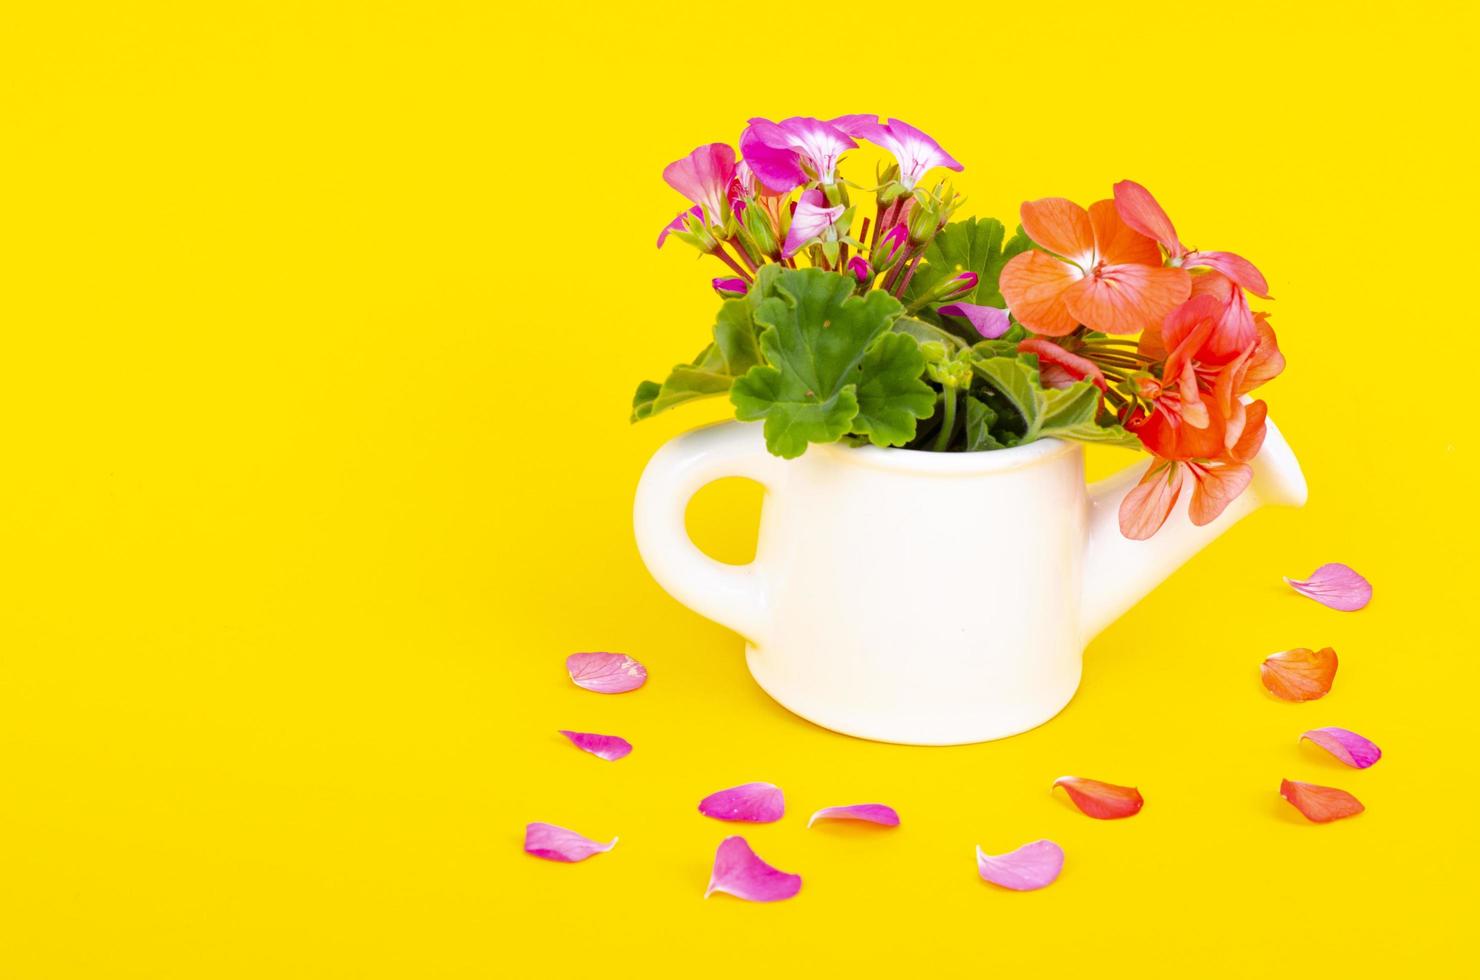 witte vaas in de vorm van een gieter met bloemen op een lichte achtergrond. tuinieren concept. studio foto